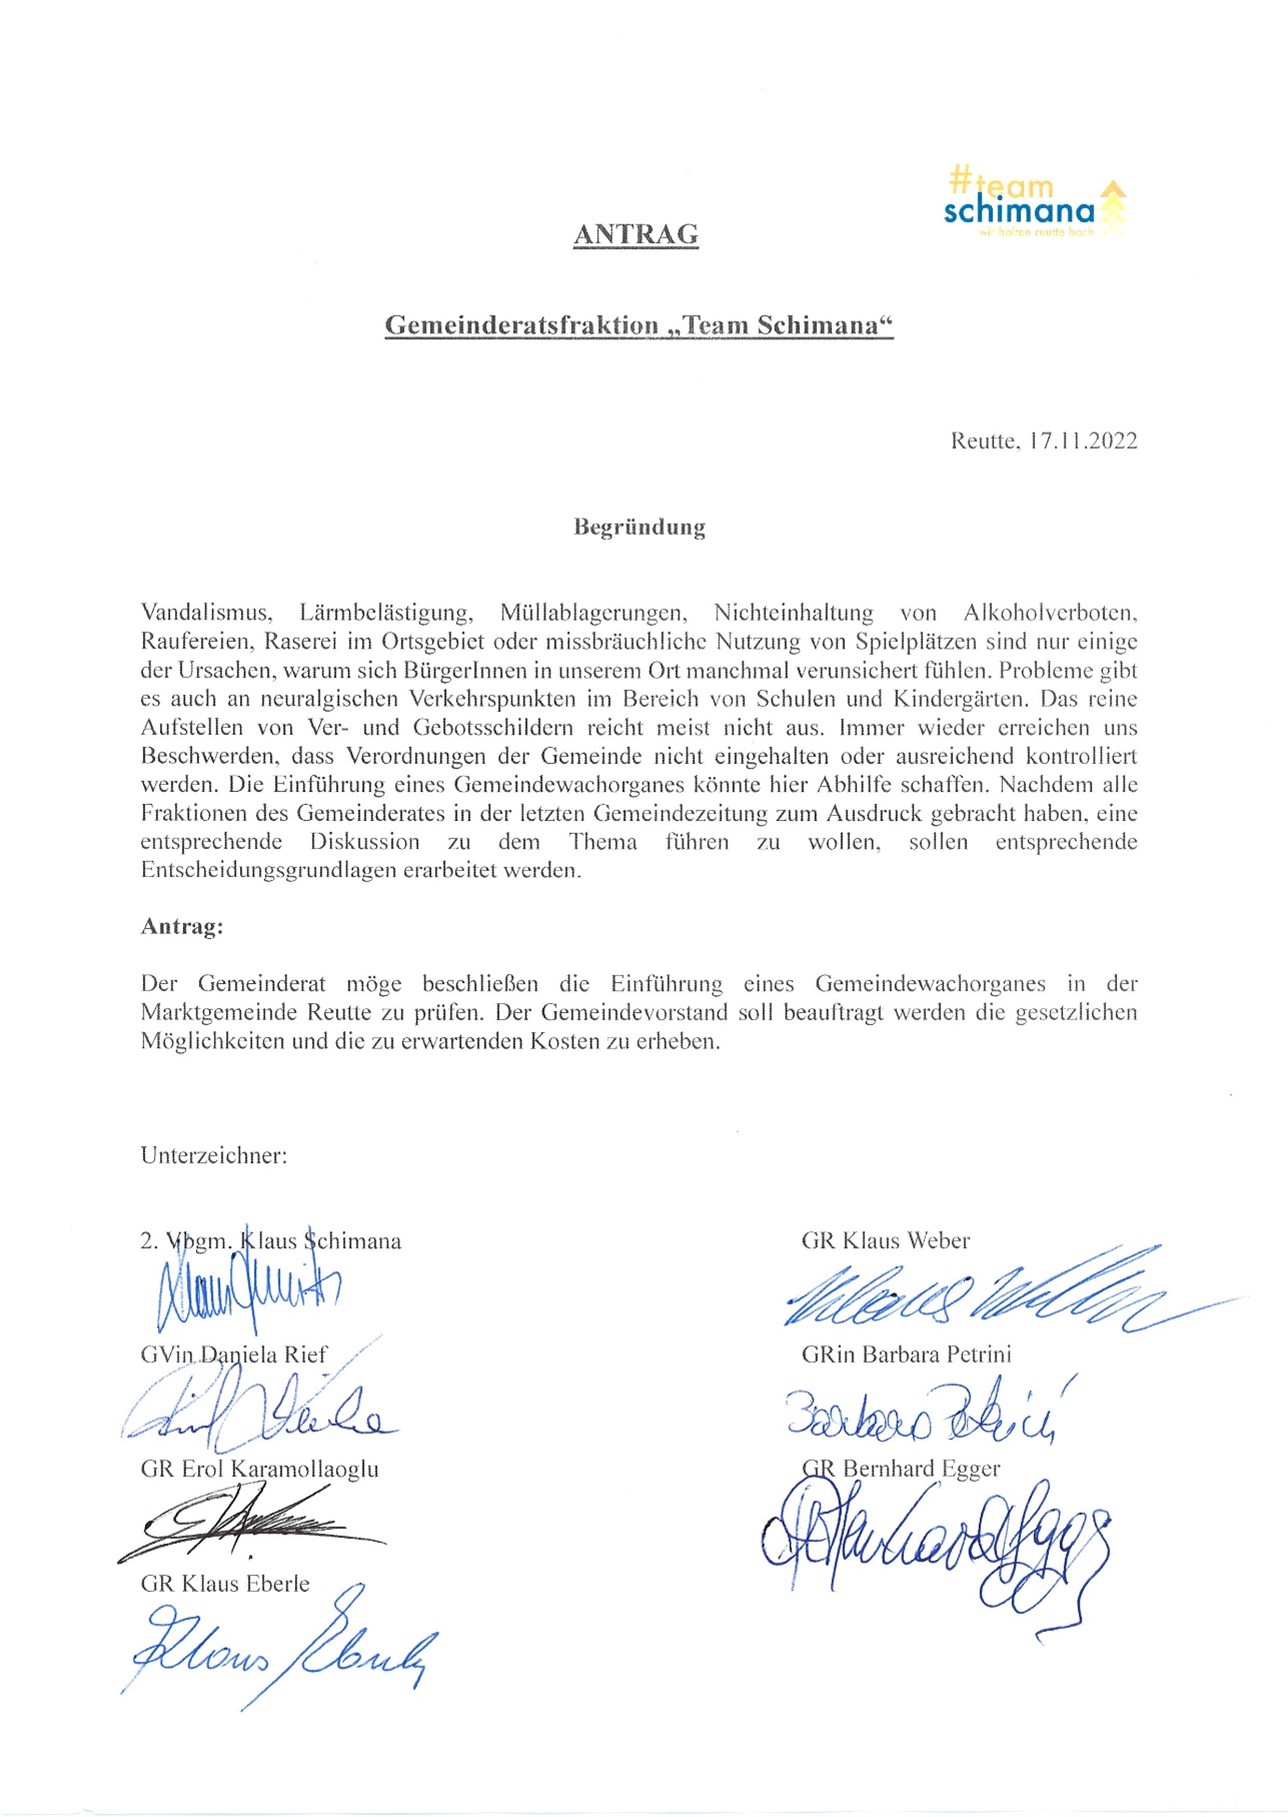 Antrag der Gemeinderatsfraktion Team Schimana mit Begründung zur Einführung eines Gemeindewachorganes in der Marktgemeinde Reutte